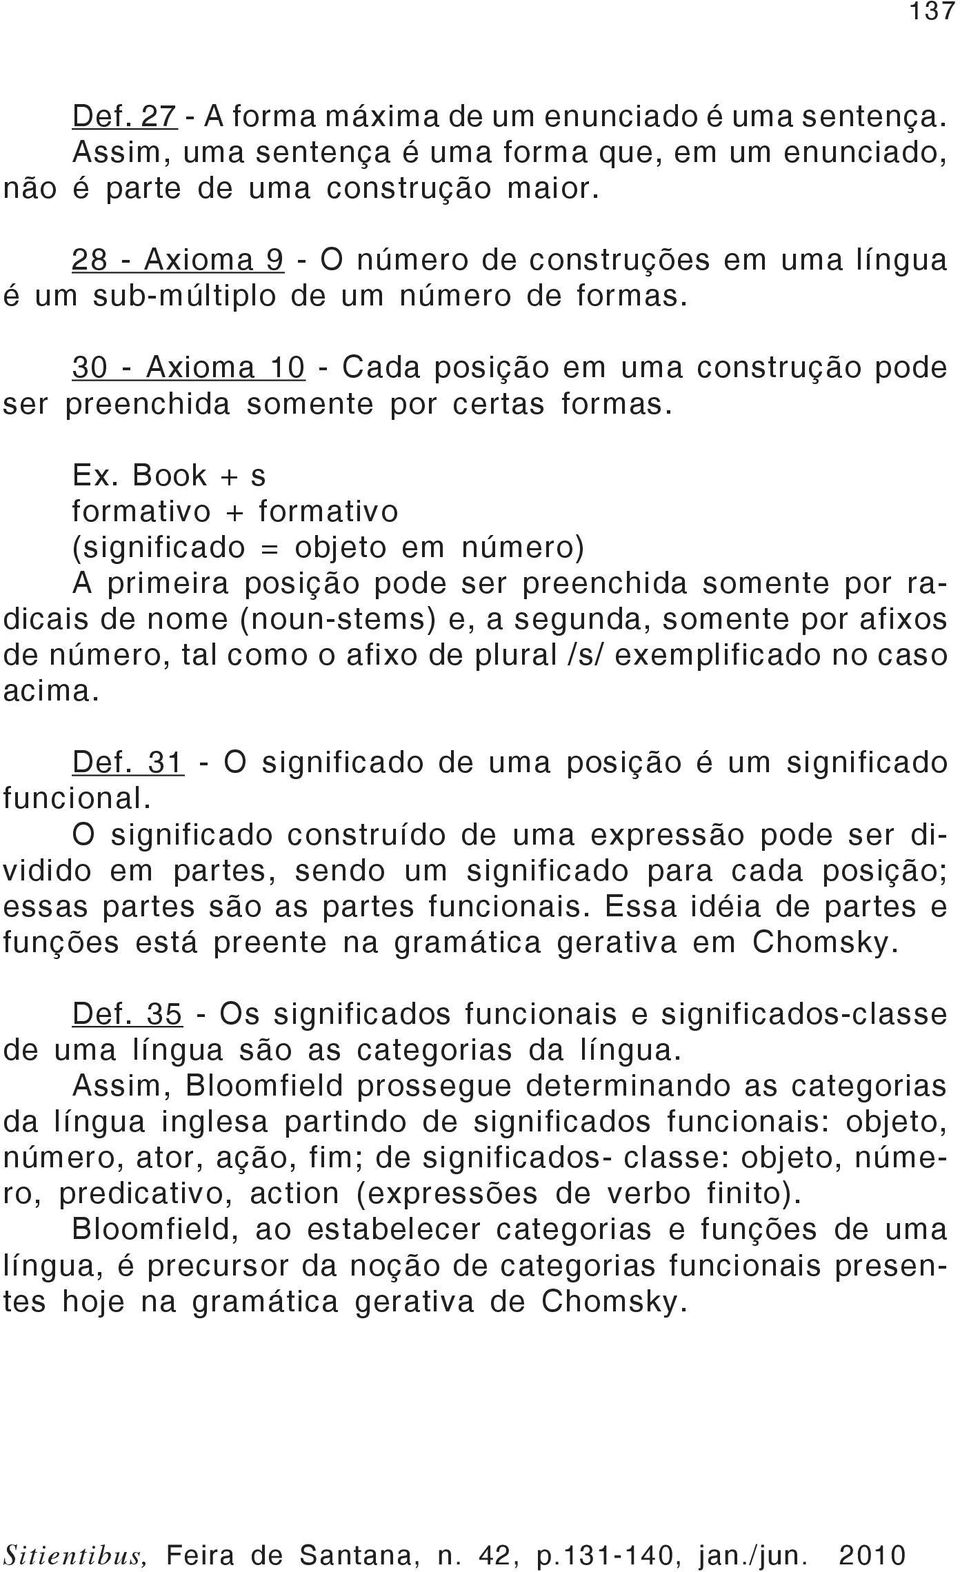 Book + s formativo + formativo (significado = objeto em número) A primeira posição pode ser preenchida somente por radicais de nome (noun-stems) e, a segunda, somente por afixos de número, tal como o